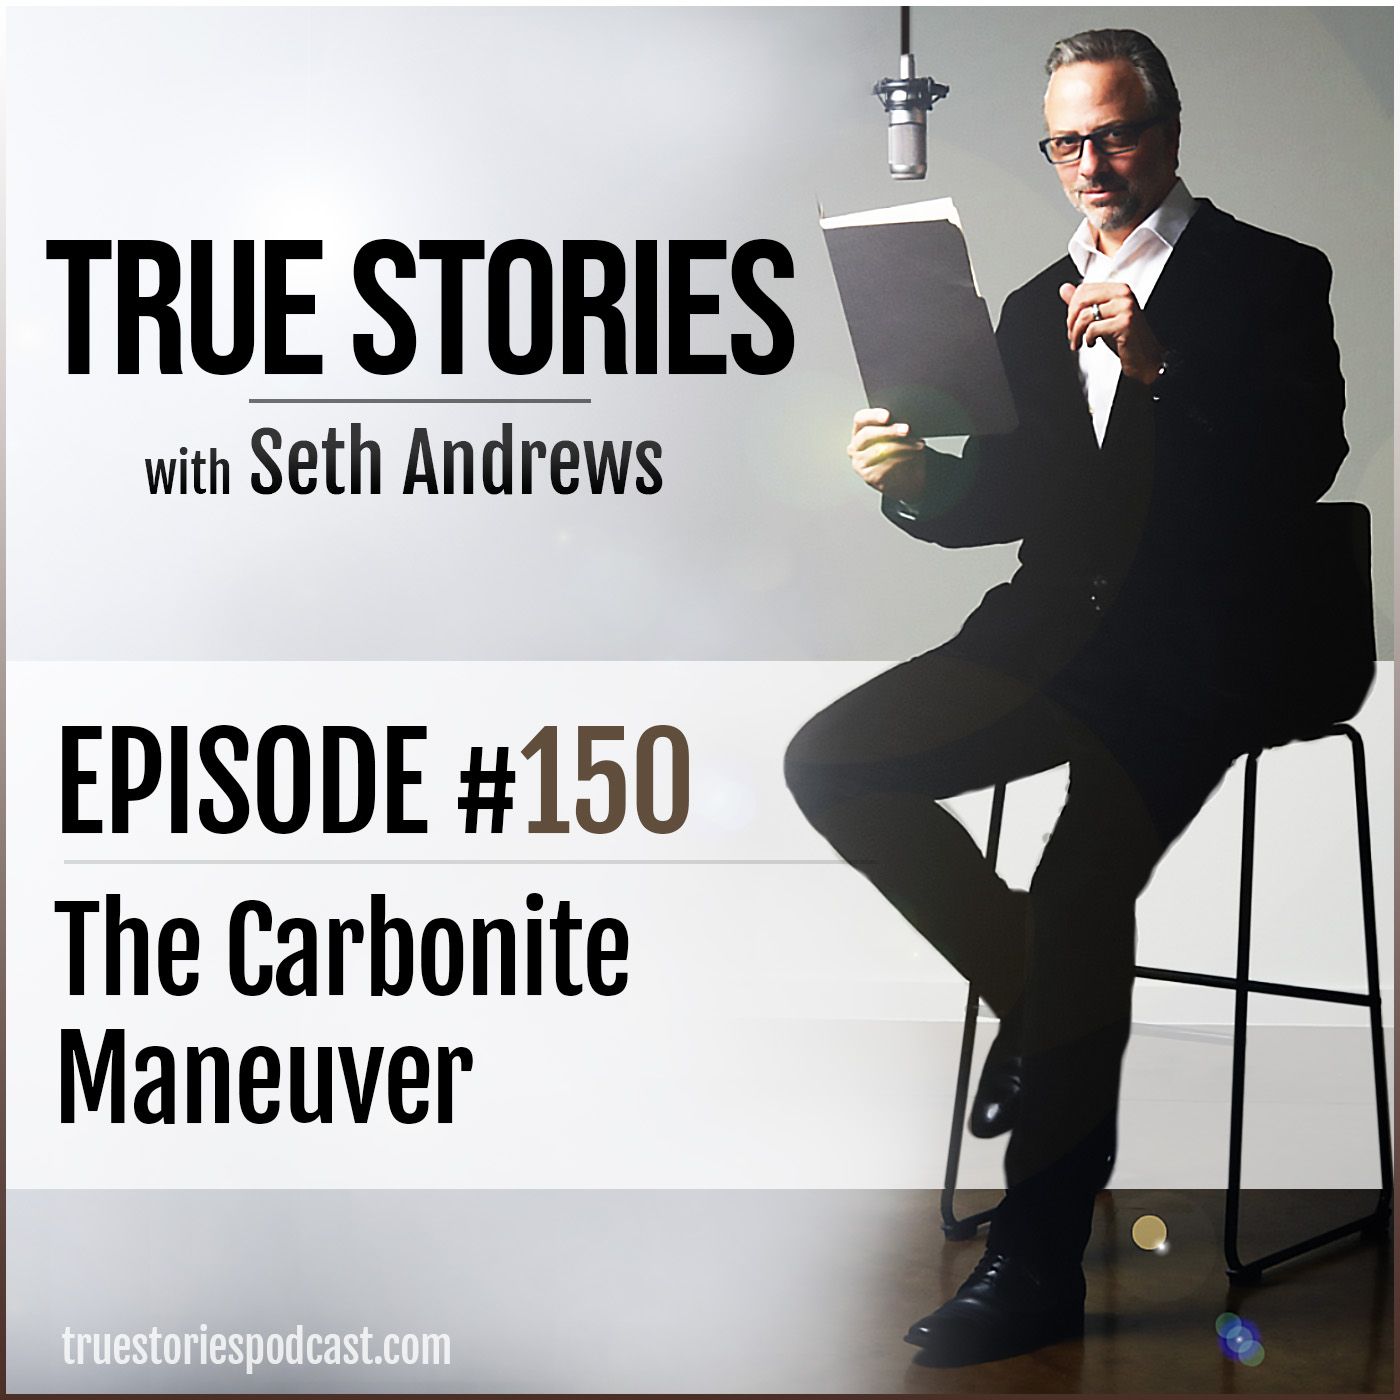 True Stories #150 - The Carbonite Maneuver